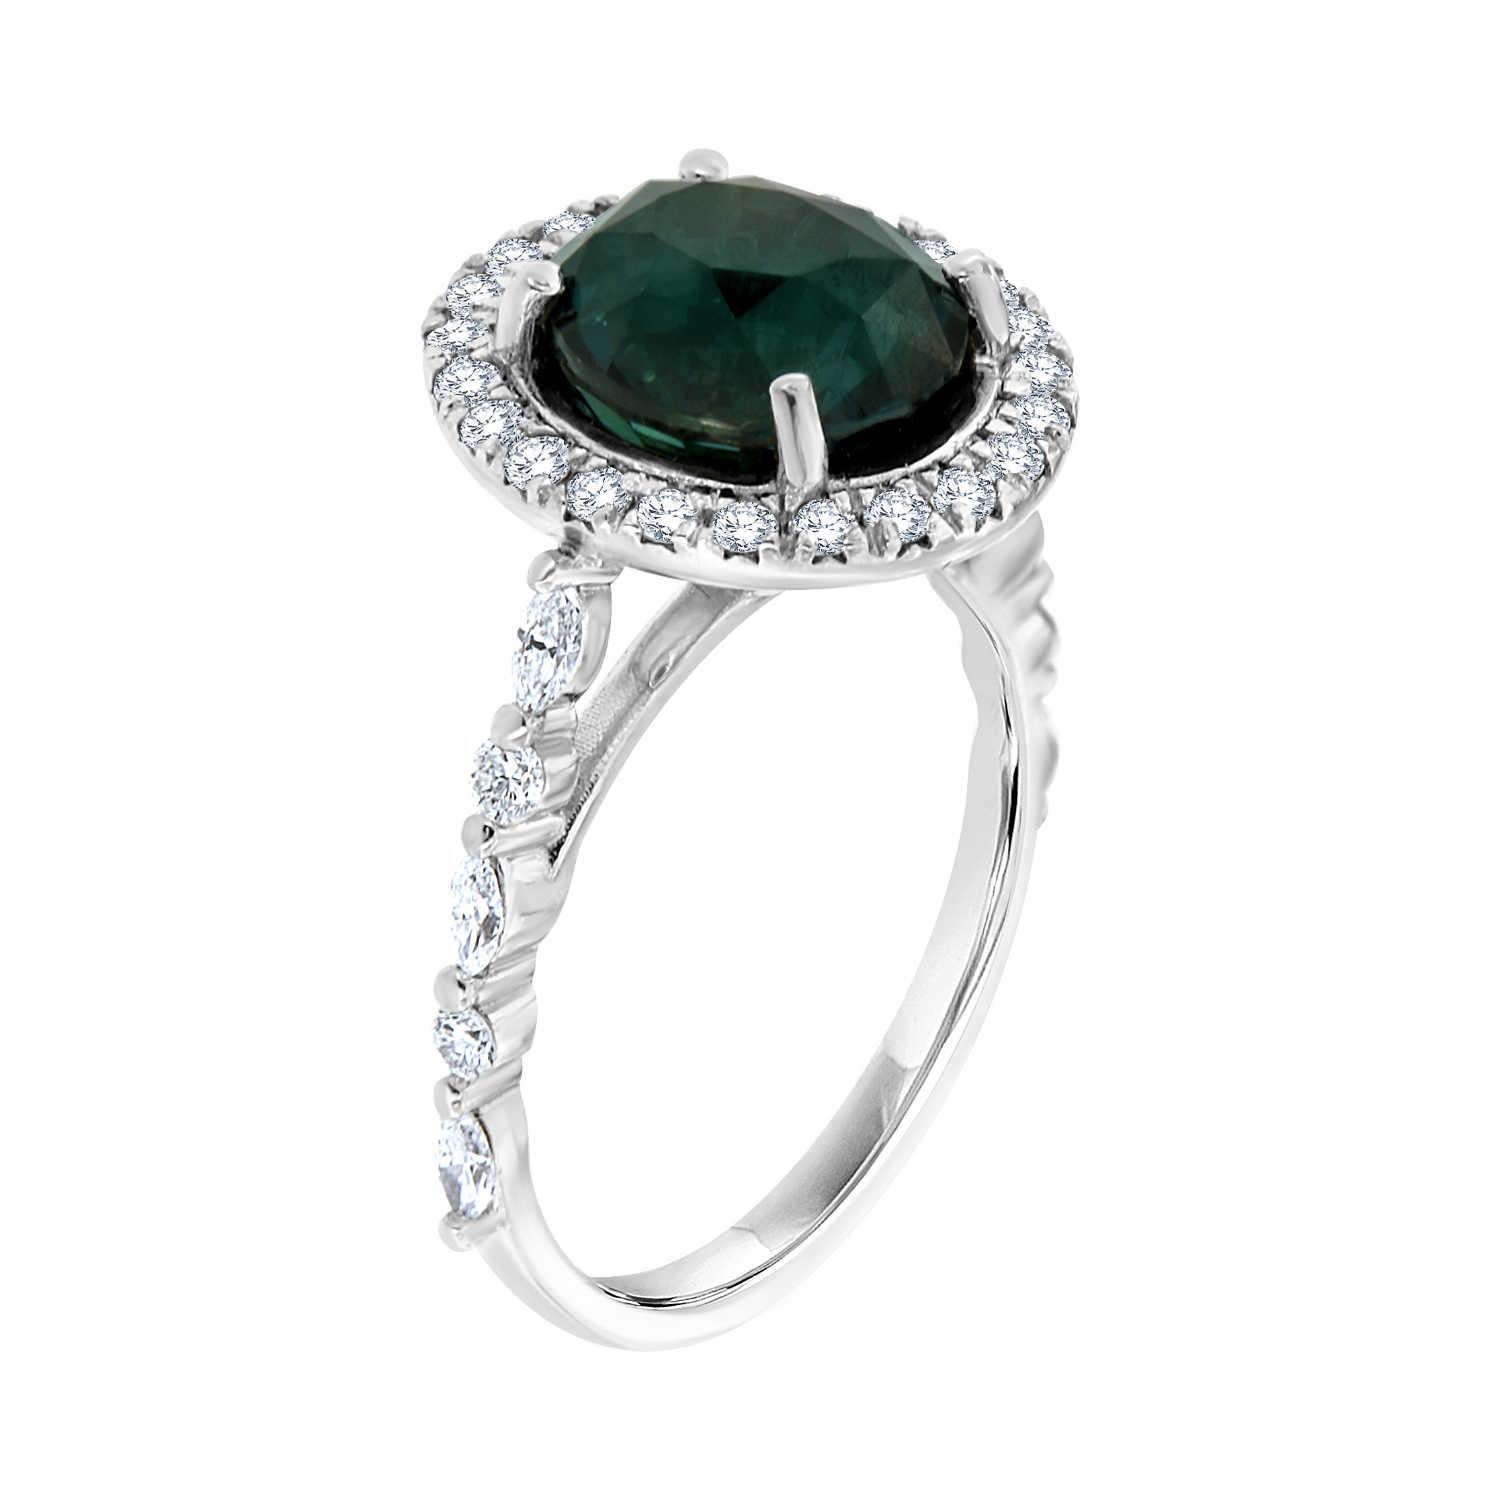 Dieser einzigartige Ring im Halo-Stil verfügt über einen 4,31-Karat Oval Form Un-Heated Blue- Green Saphir GIA Zertifikat 5212628389. Ein Halo aus runden Brillanten umgibt diesen seltenen Saphir und bringt seine leuchtende Farbe und seinen